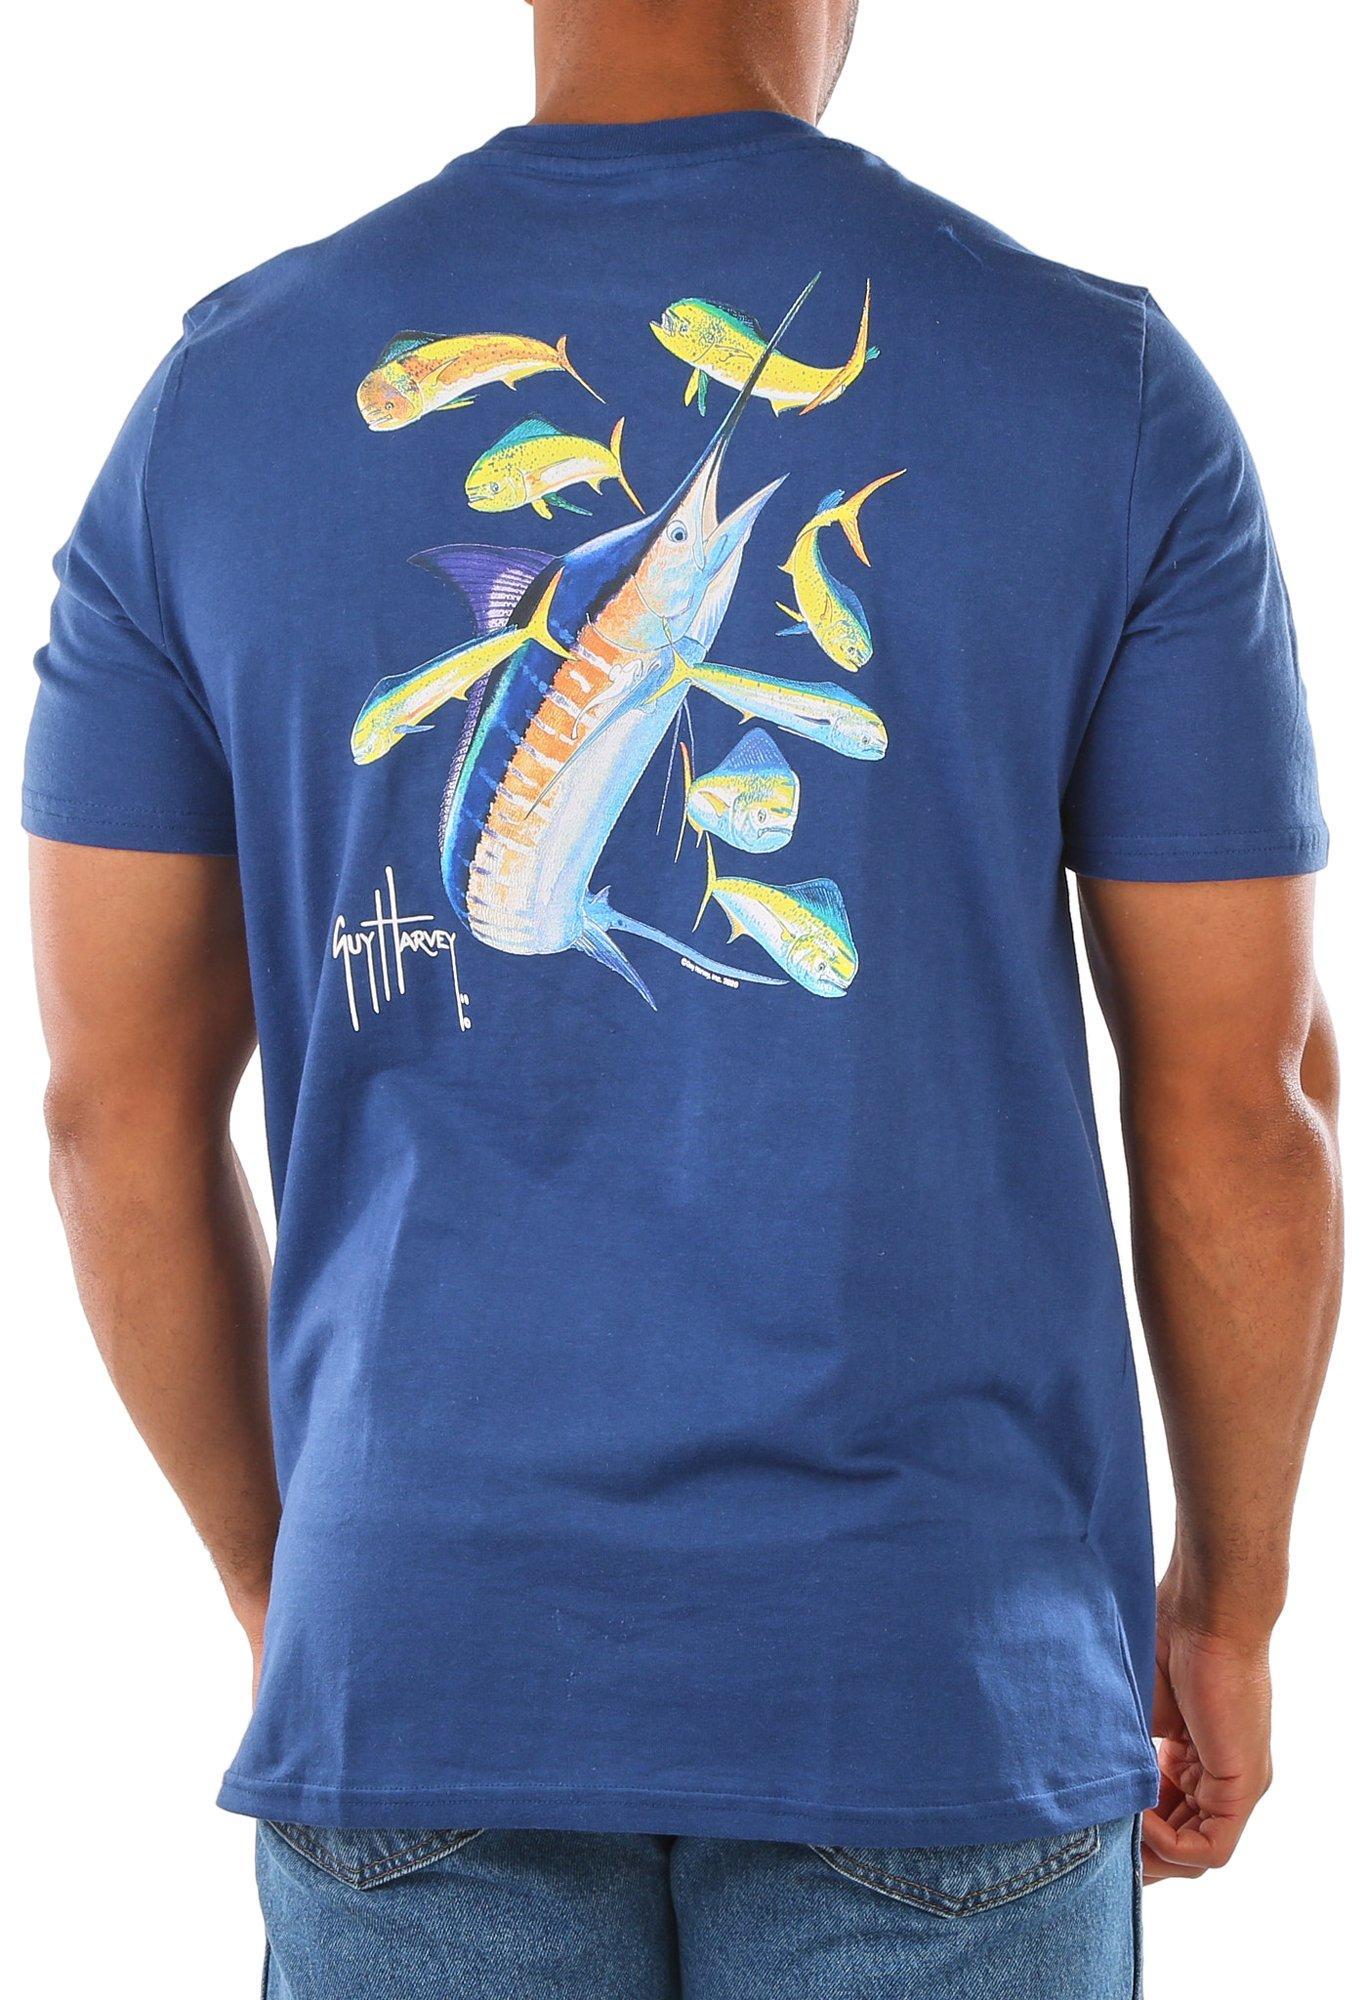 Mens Marlin & Dorado Fish Short Sleeve T-Shirt